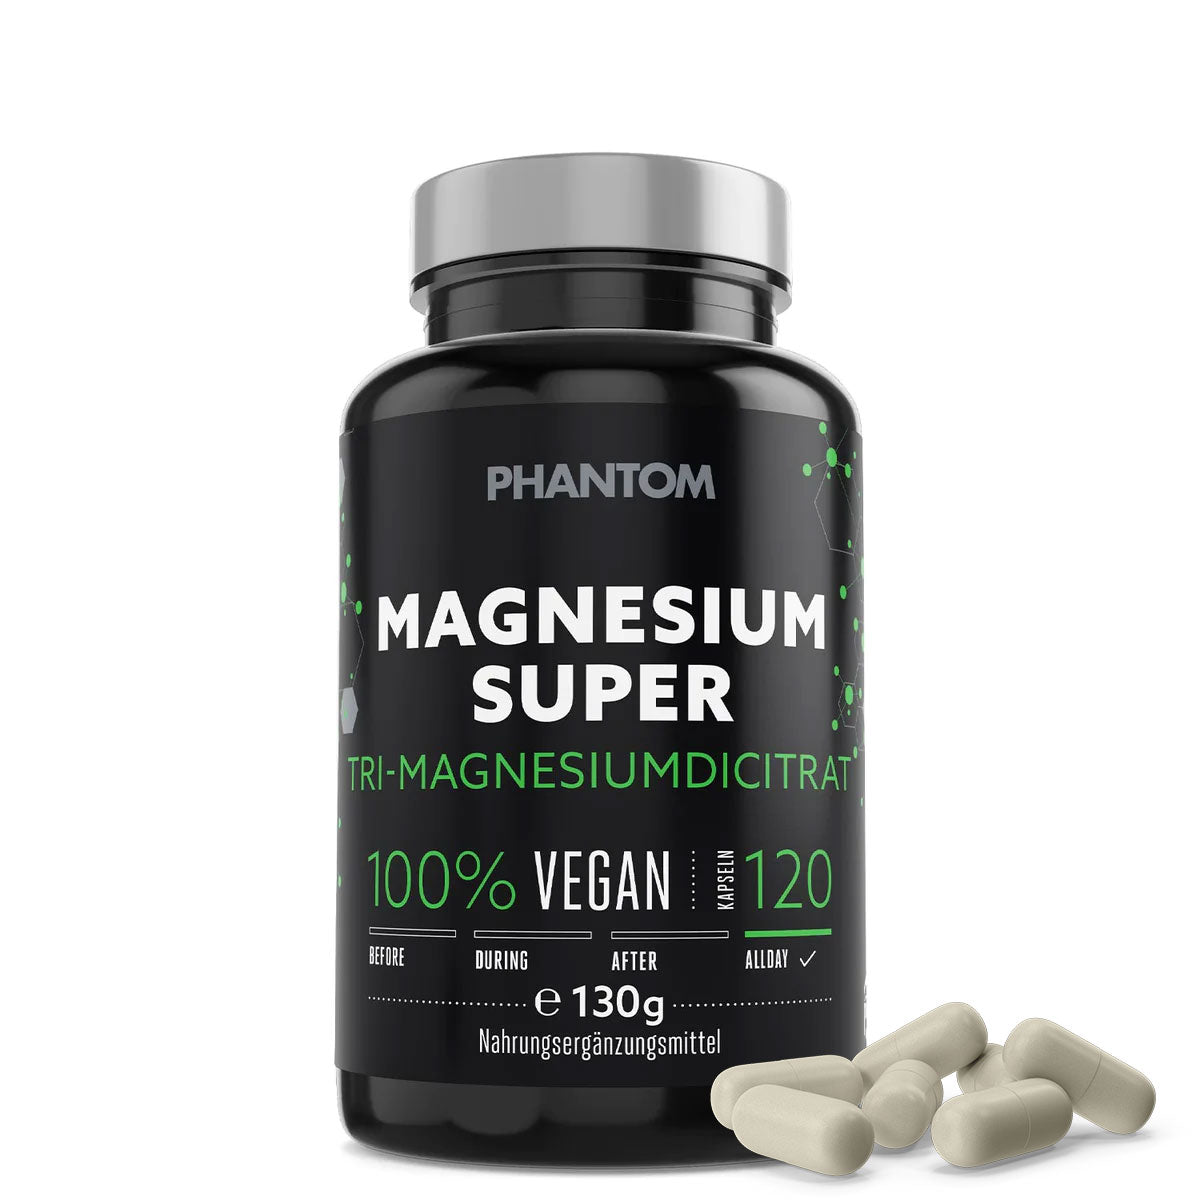 Capsule Phantom Magnesium Super per una migliore rigenerazione nelle arti marziali.